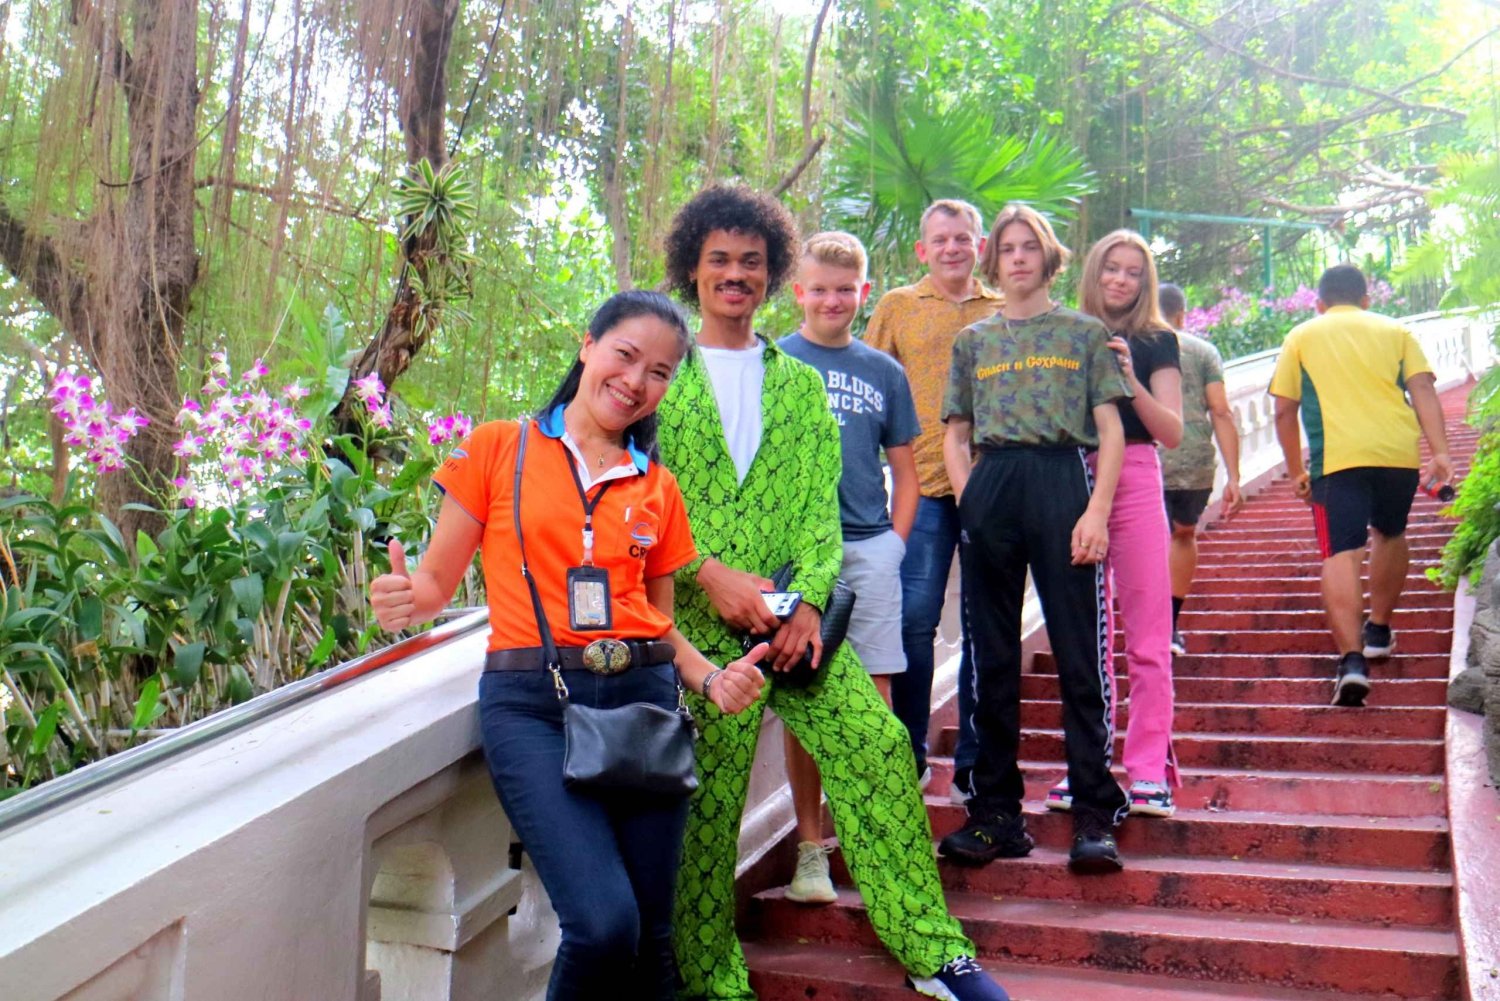 Tour particular personalizado com a equipe do Thailand Insight em Bangkok